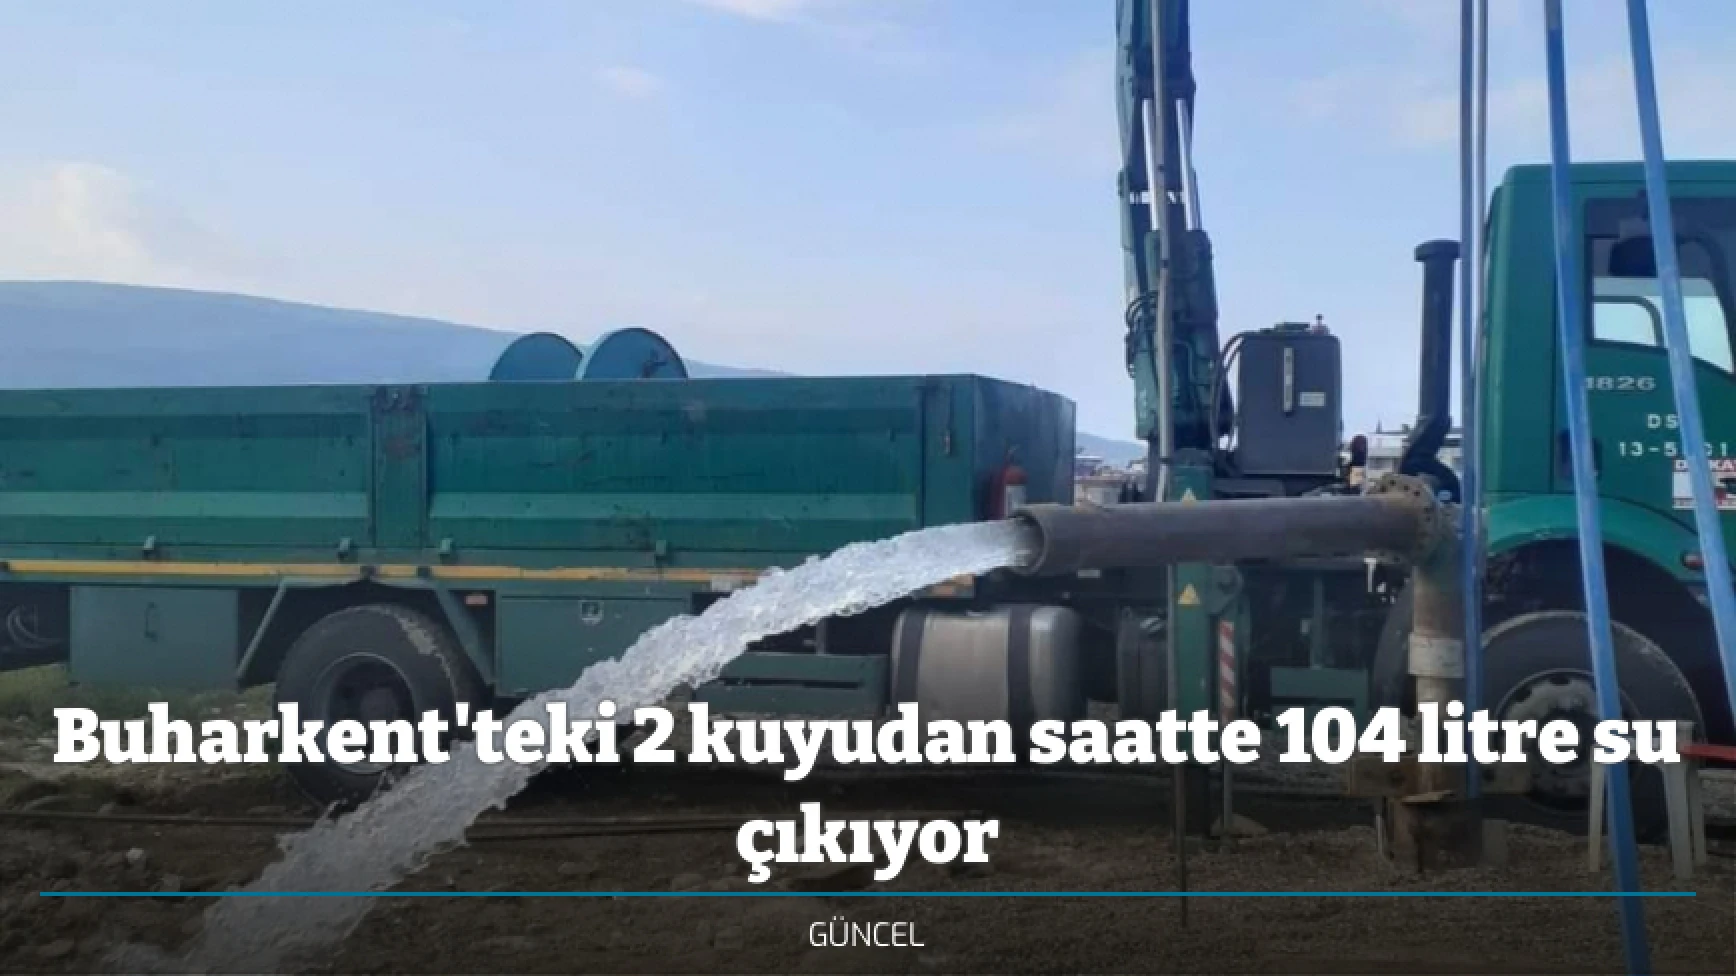 Buharkent'teki 2 kuyudan saatte 104 litre su çıkıyor